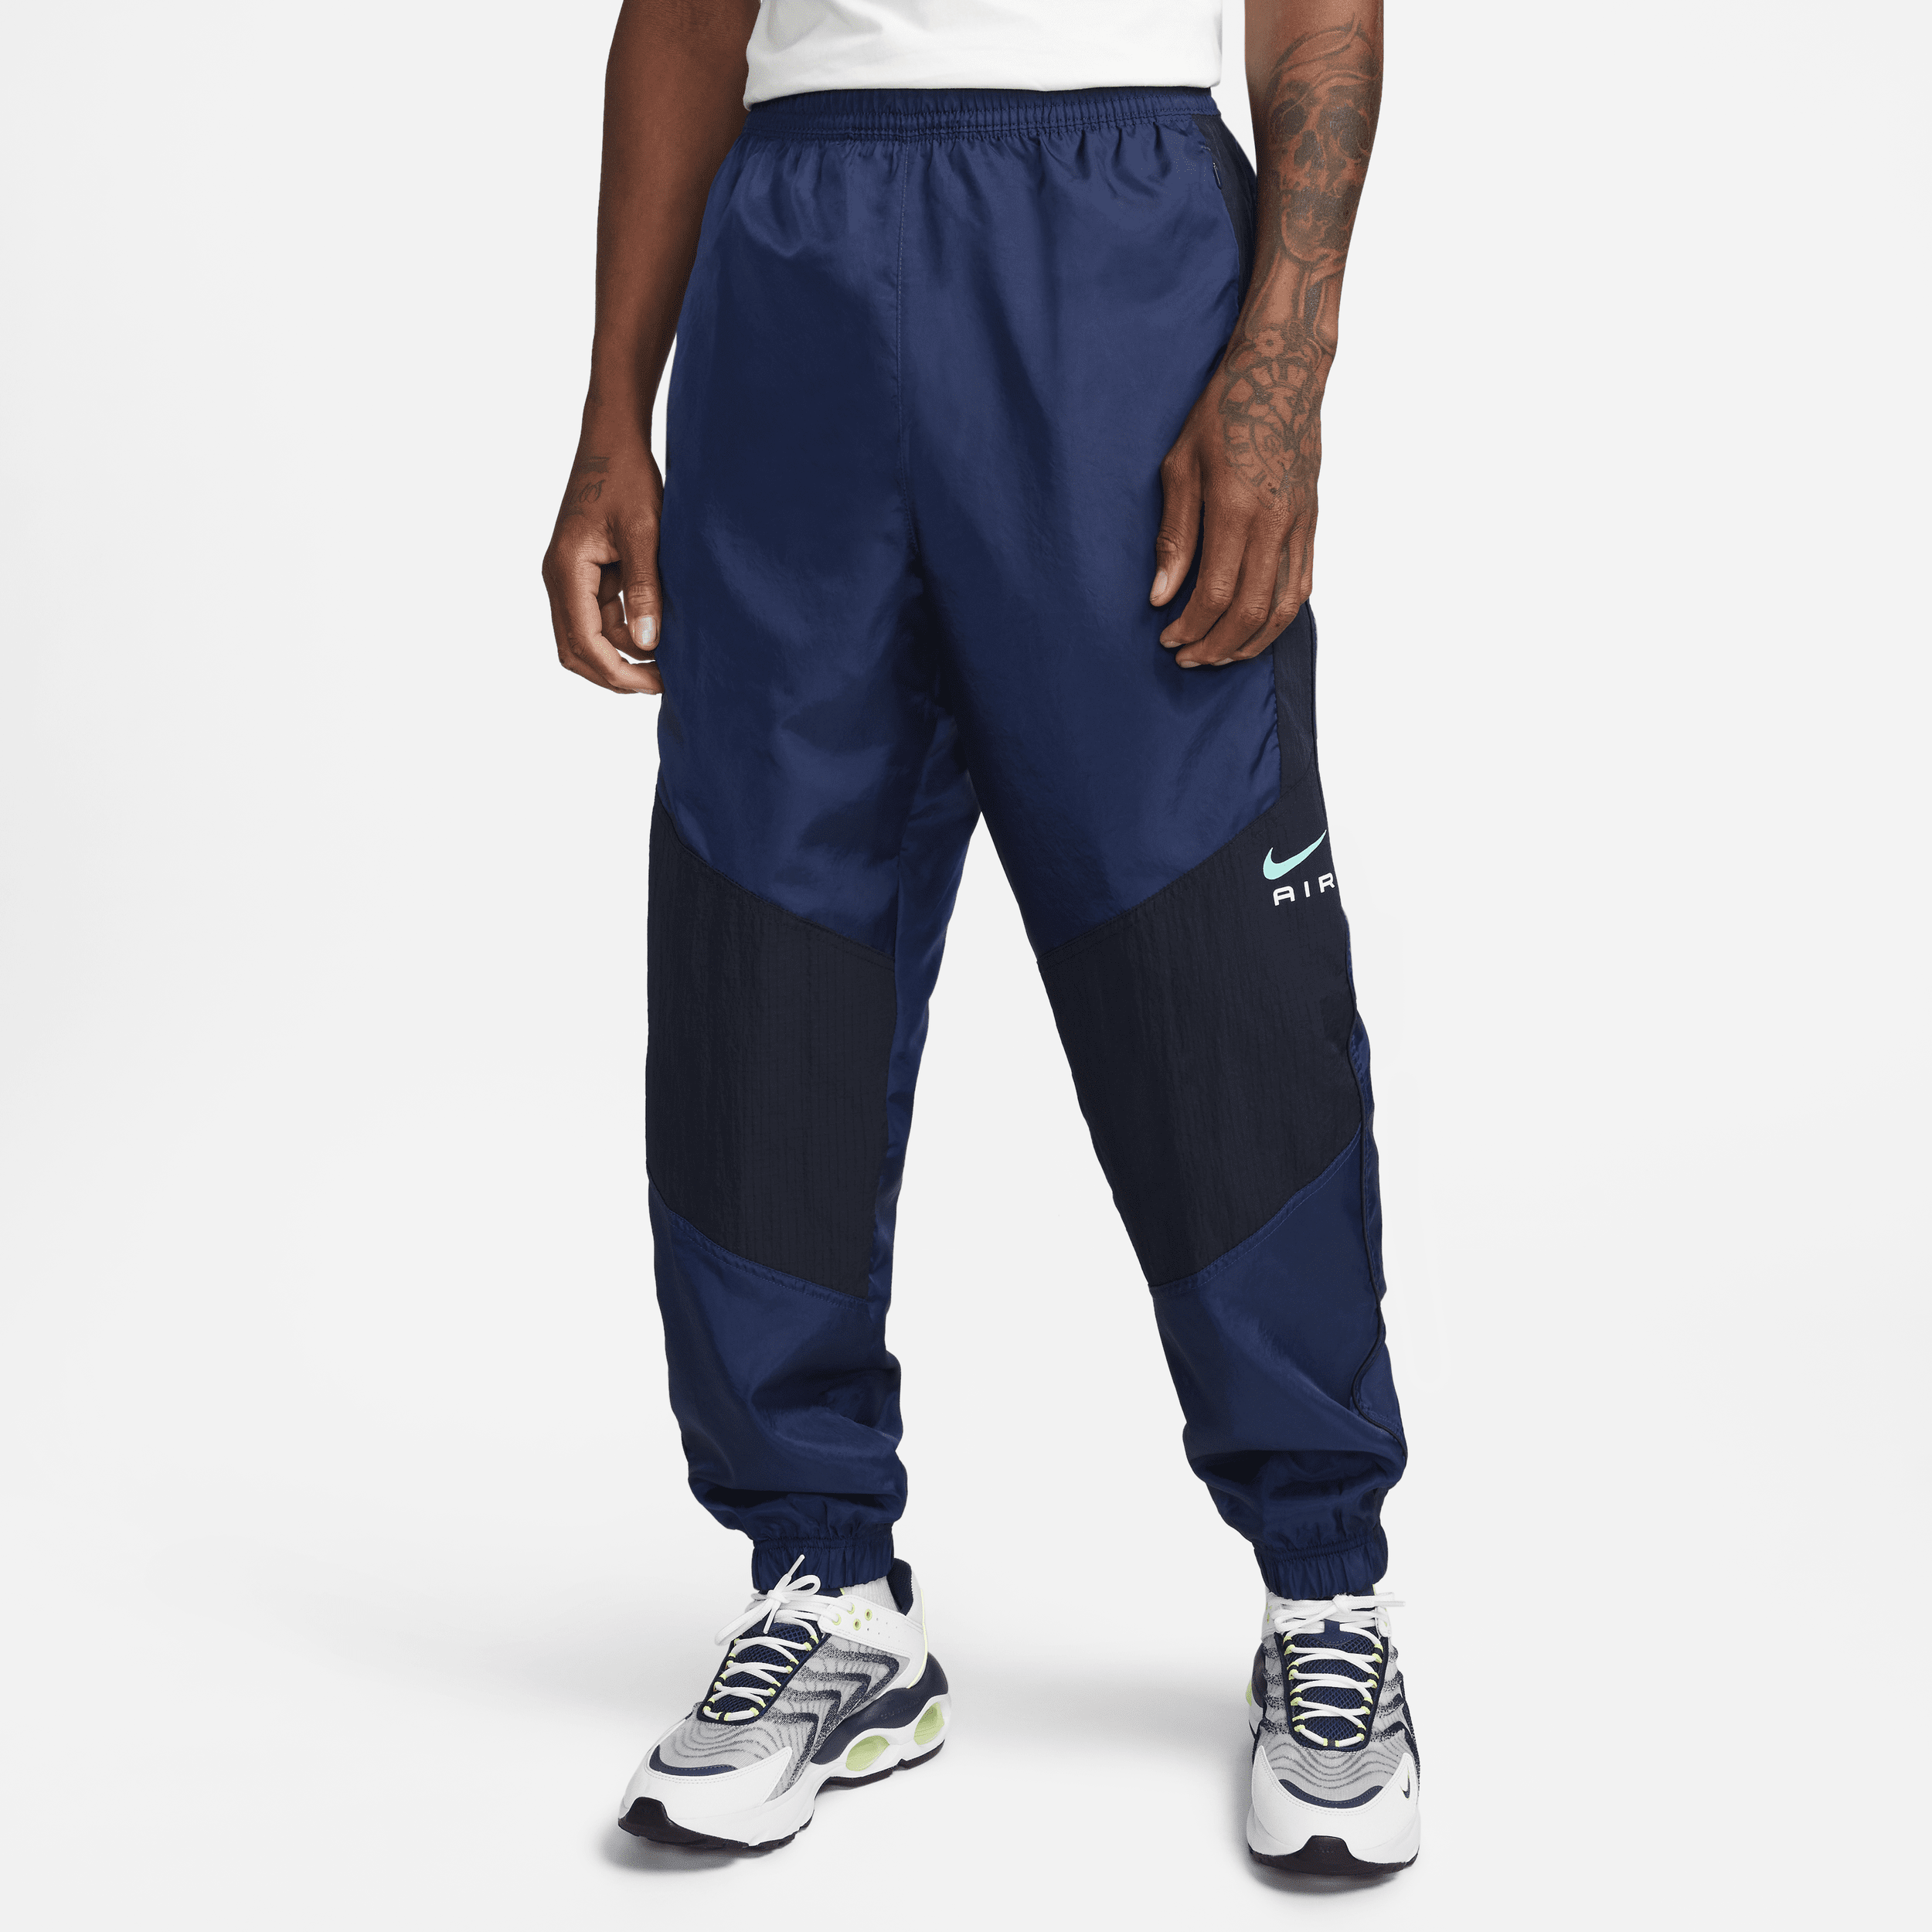 Vævede Nike Air-bukser til mænd - blå